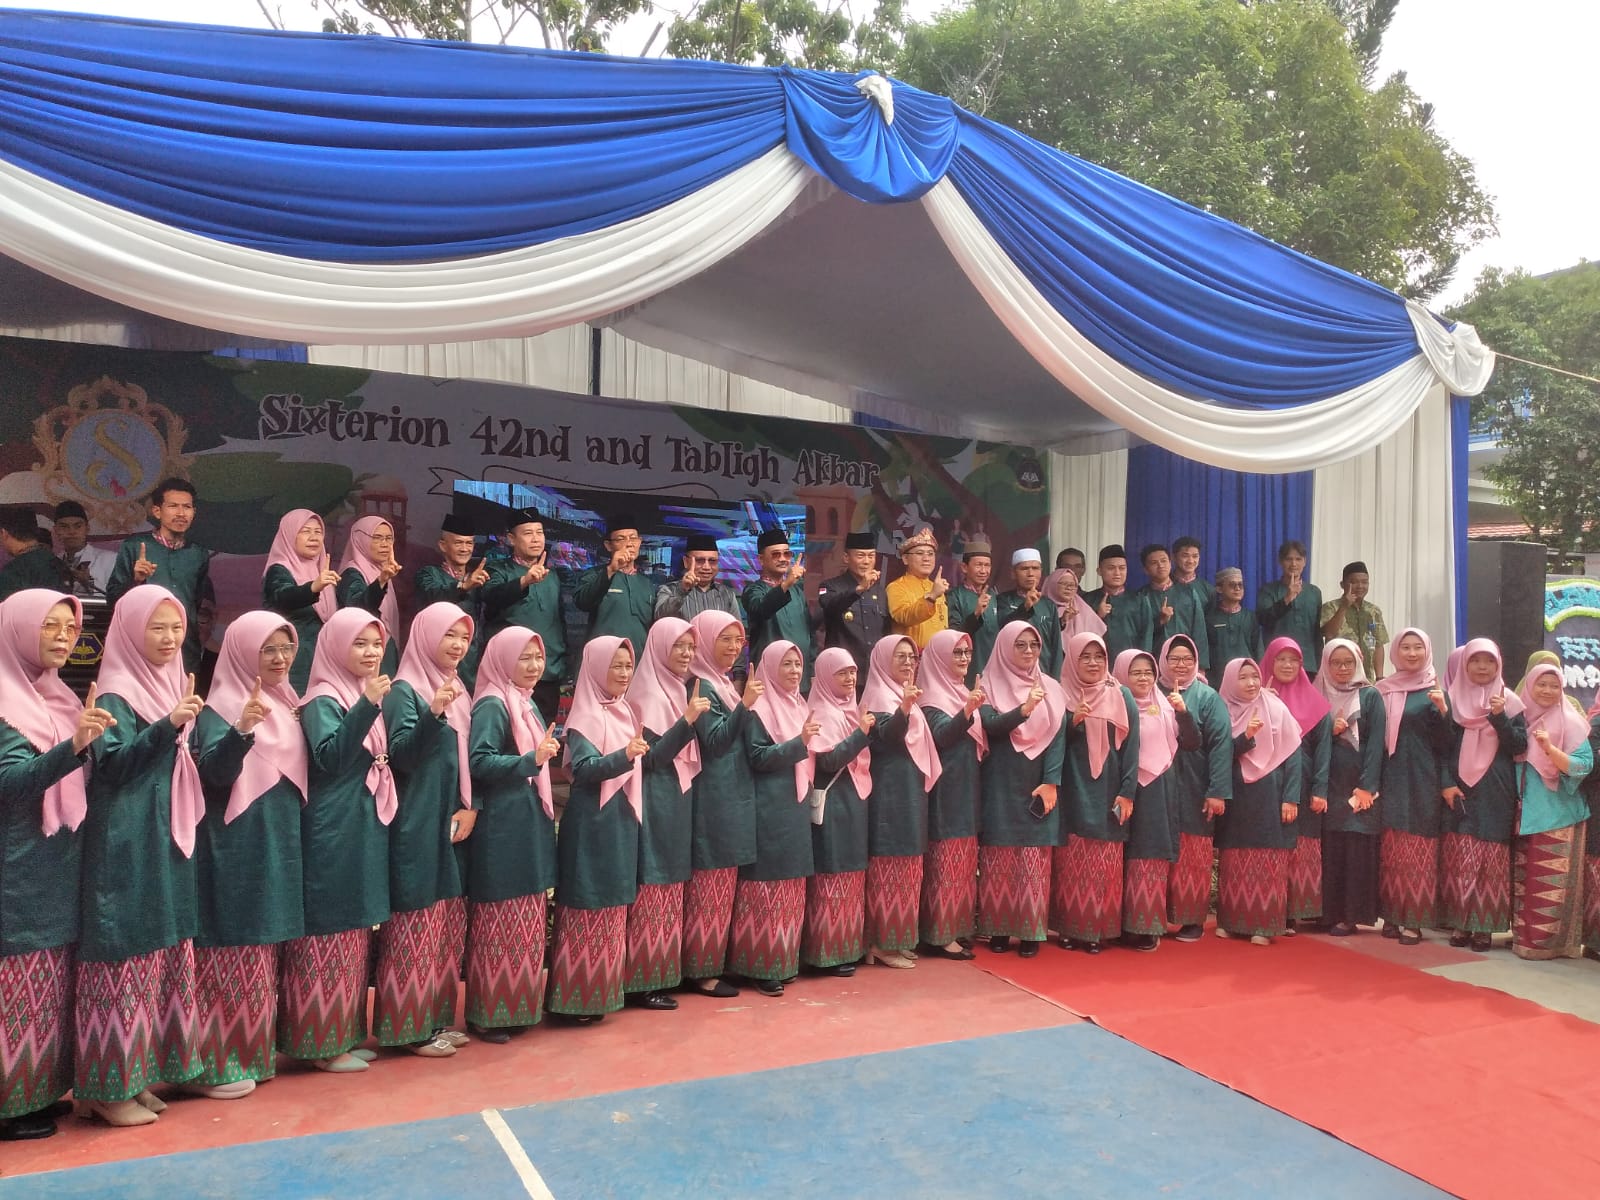 Sekolah Menengah Atas (SMA) Negeri 6 Palembang menggelar Tabliqh Akbar yang merupakan rangkaian peringatan Hari Ulang Tahun SMA Negeri 6 Palembang yang ke 42, Kamis (20/7).